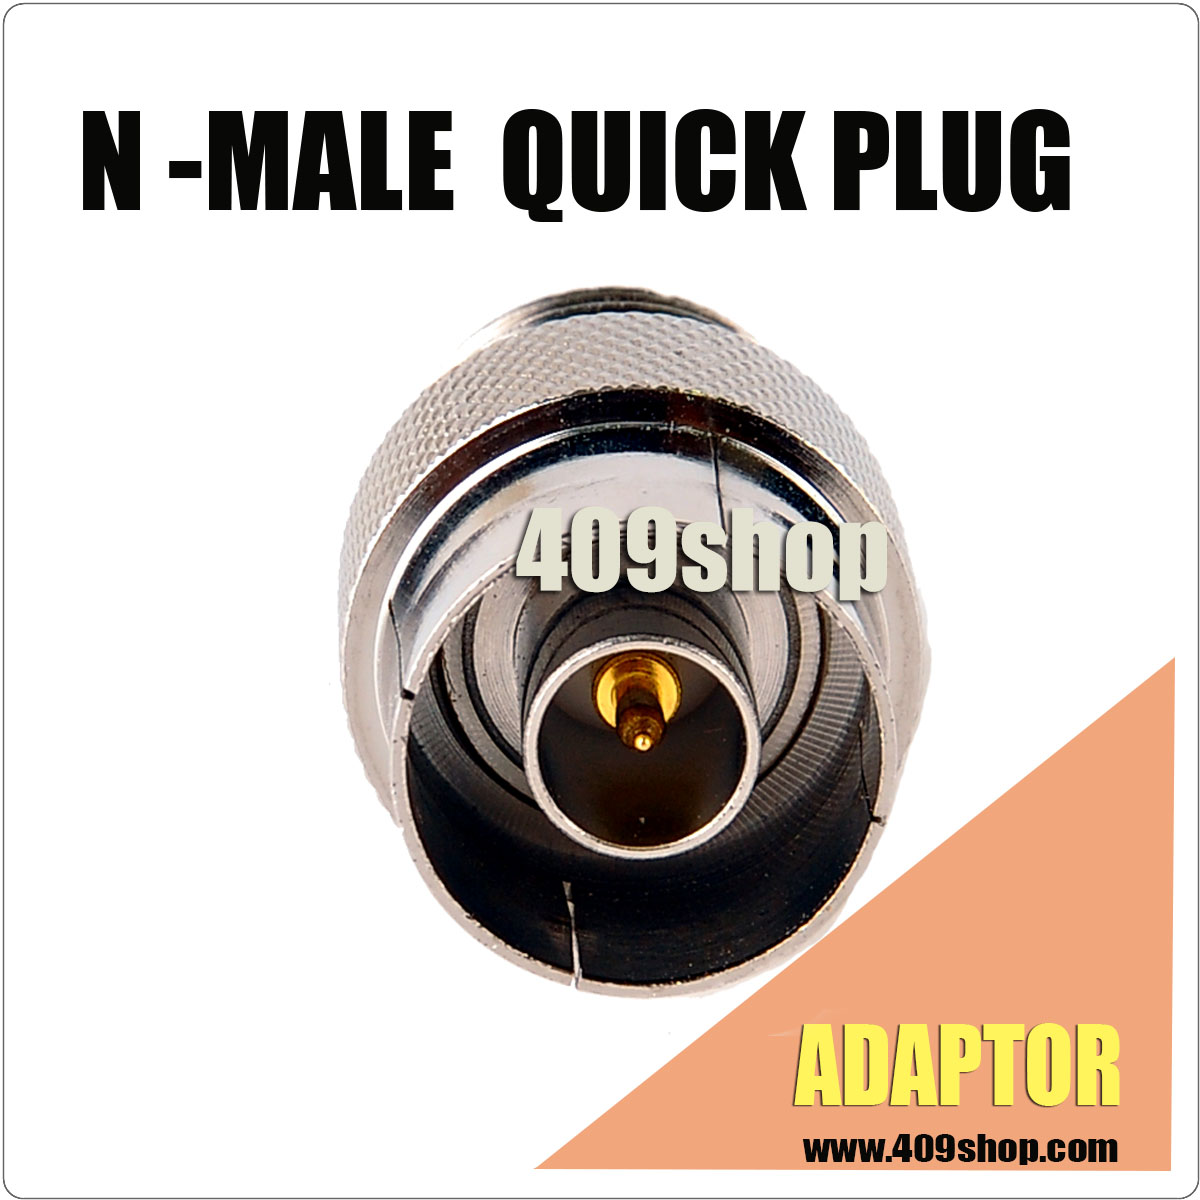 N-msle quick plug